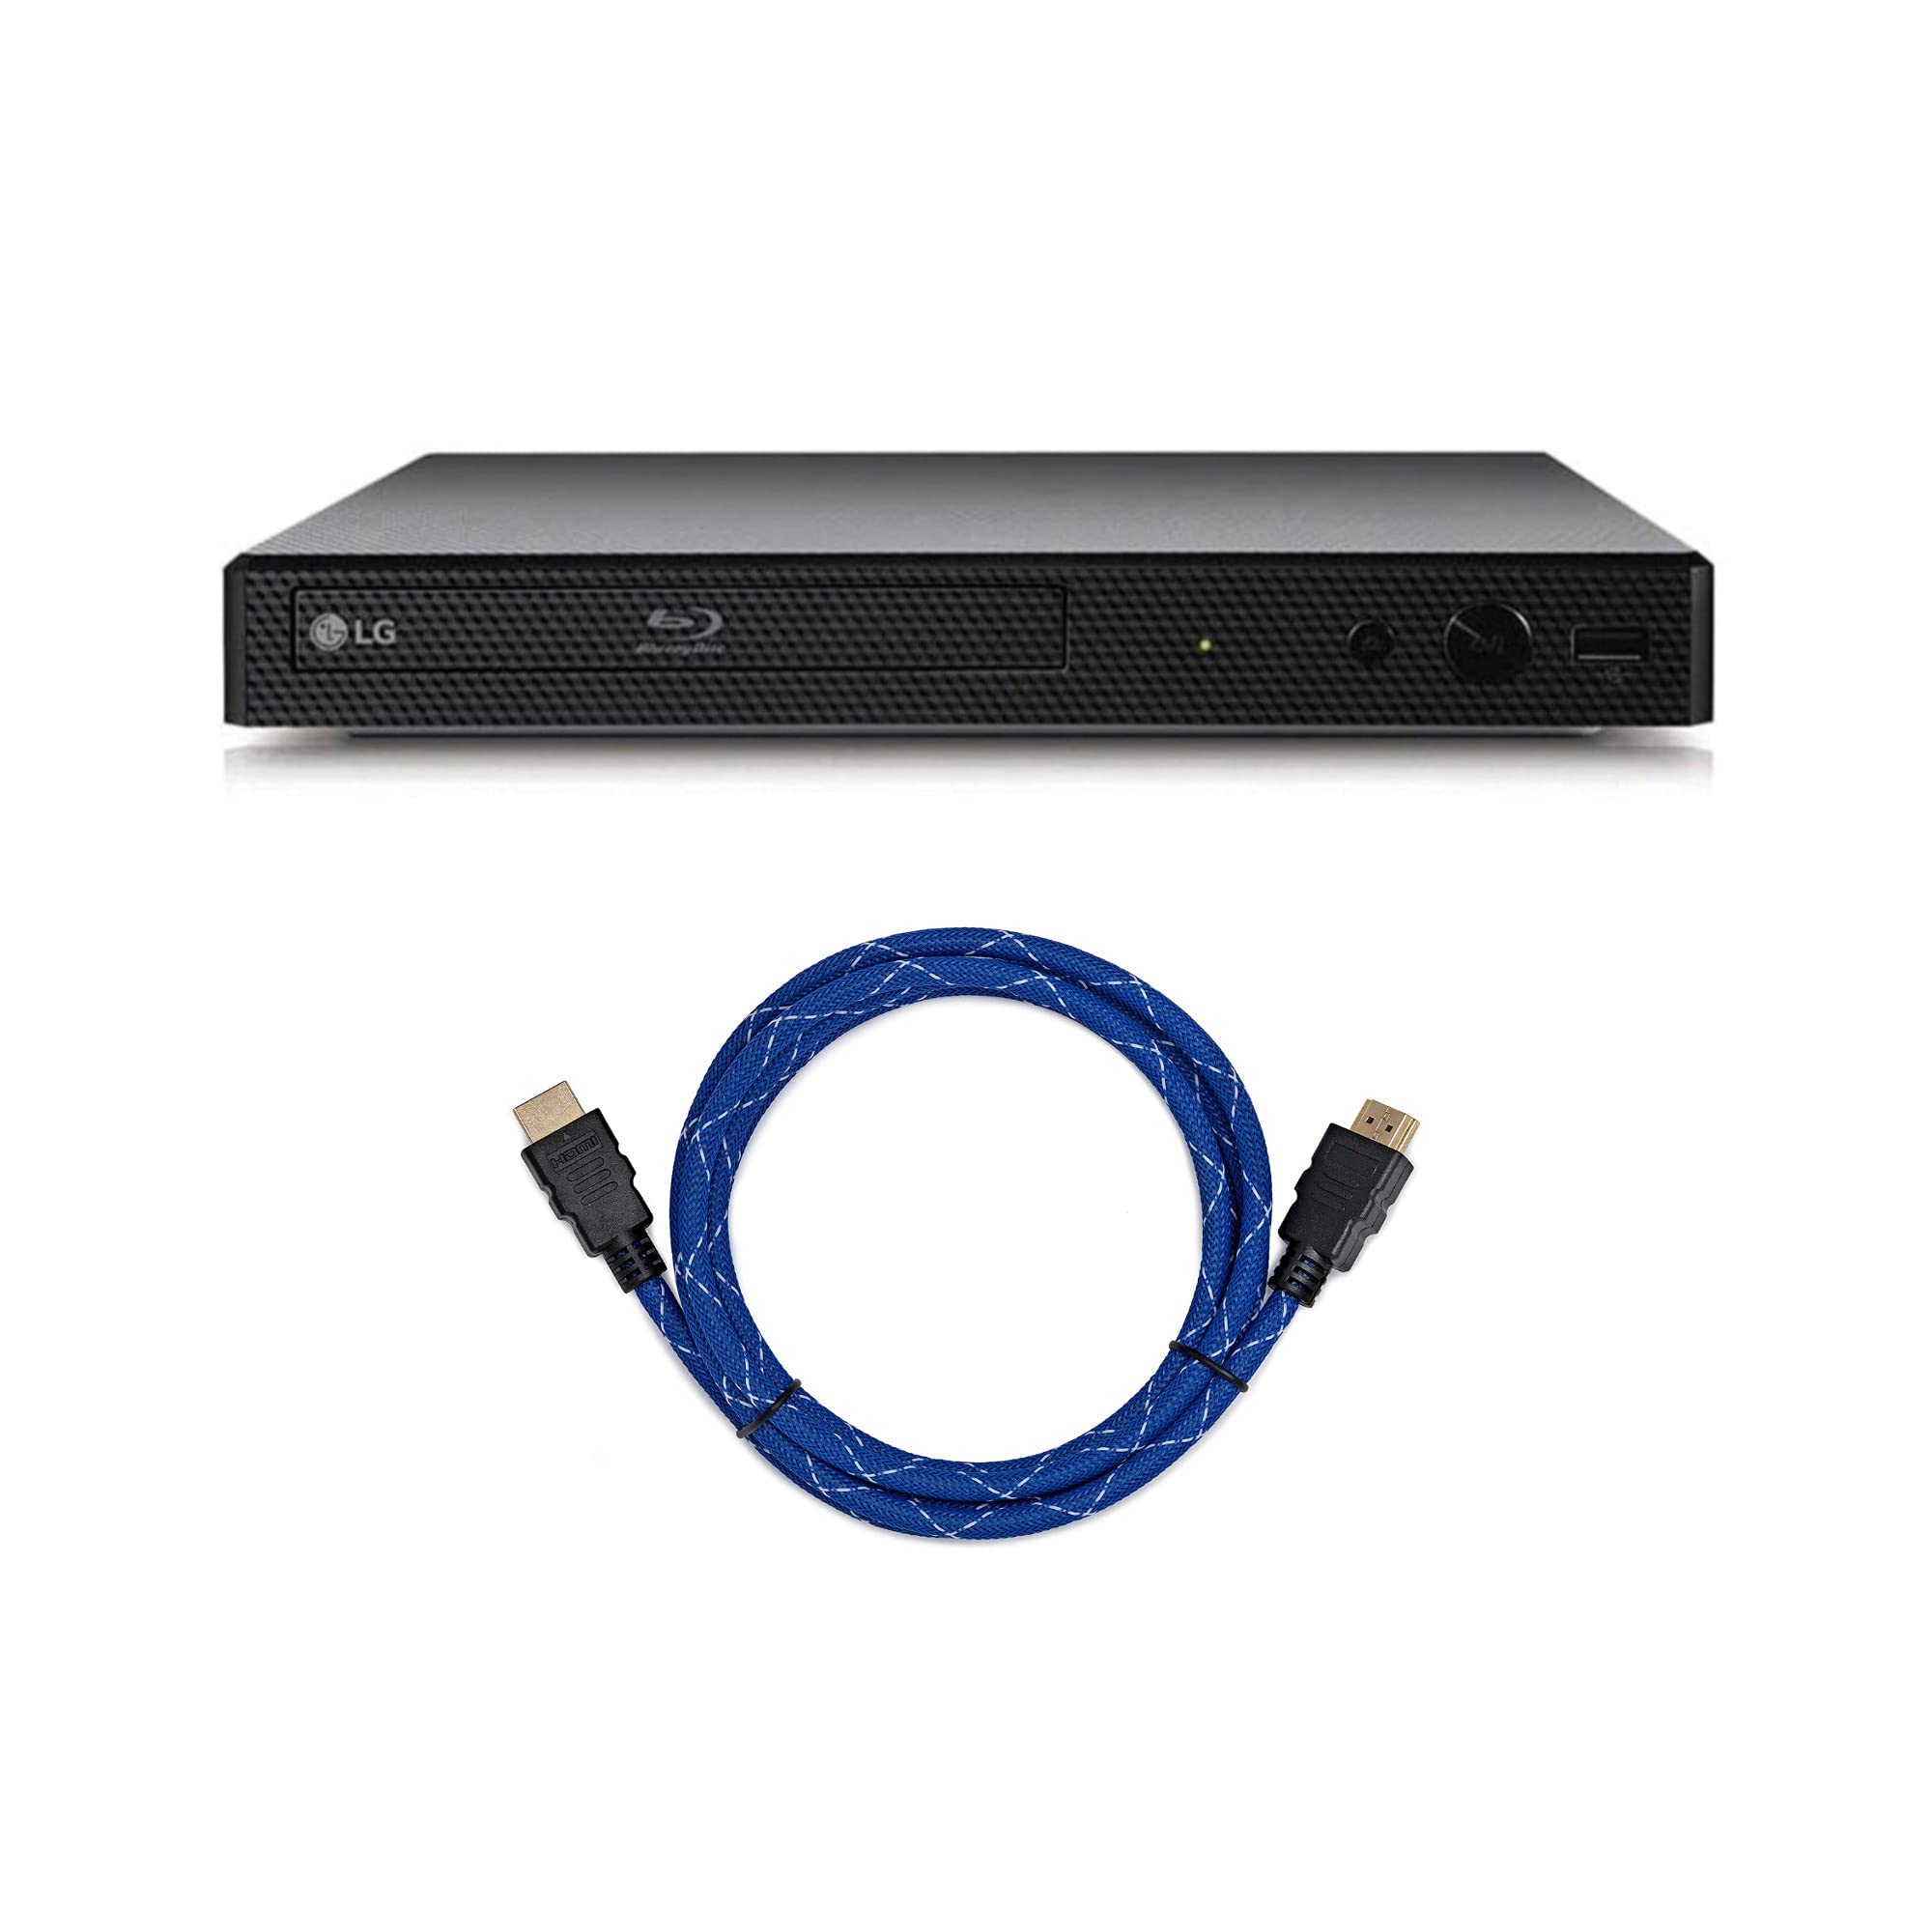 LG DVD-плеер Blu-Ray BP175 с комплектом портов HDMI (поставляется с кабелем HDMI длиной 6 футов)